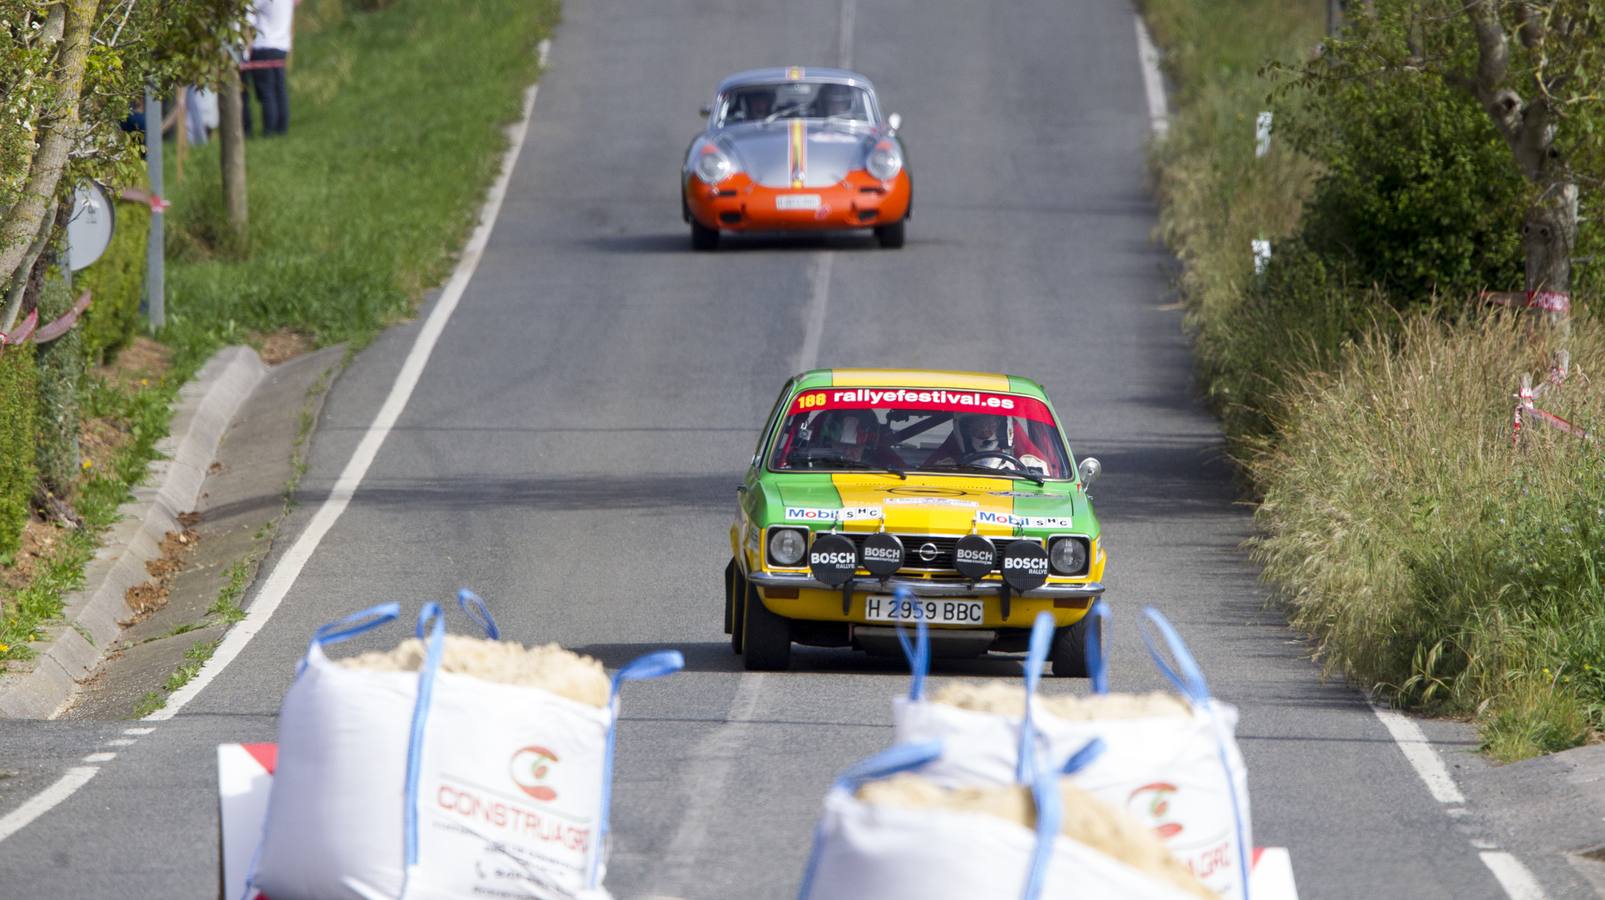 Un Opel Ascona (en primer término) llega antes que el Porsche, uno de los vehículos más antiguos de la prueba.